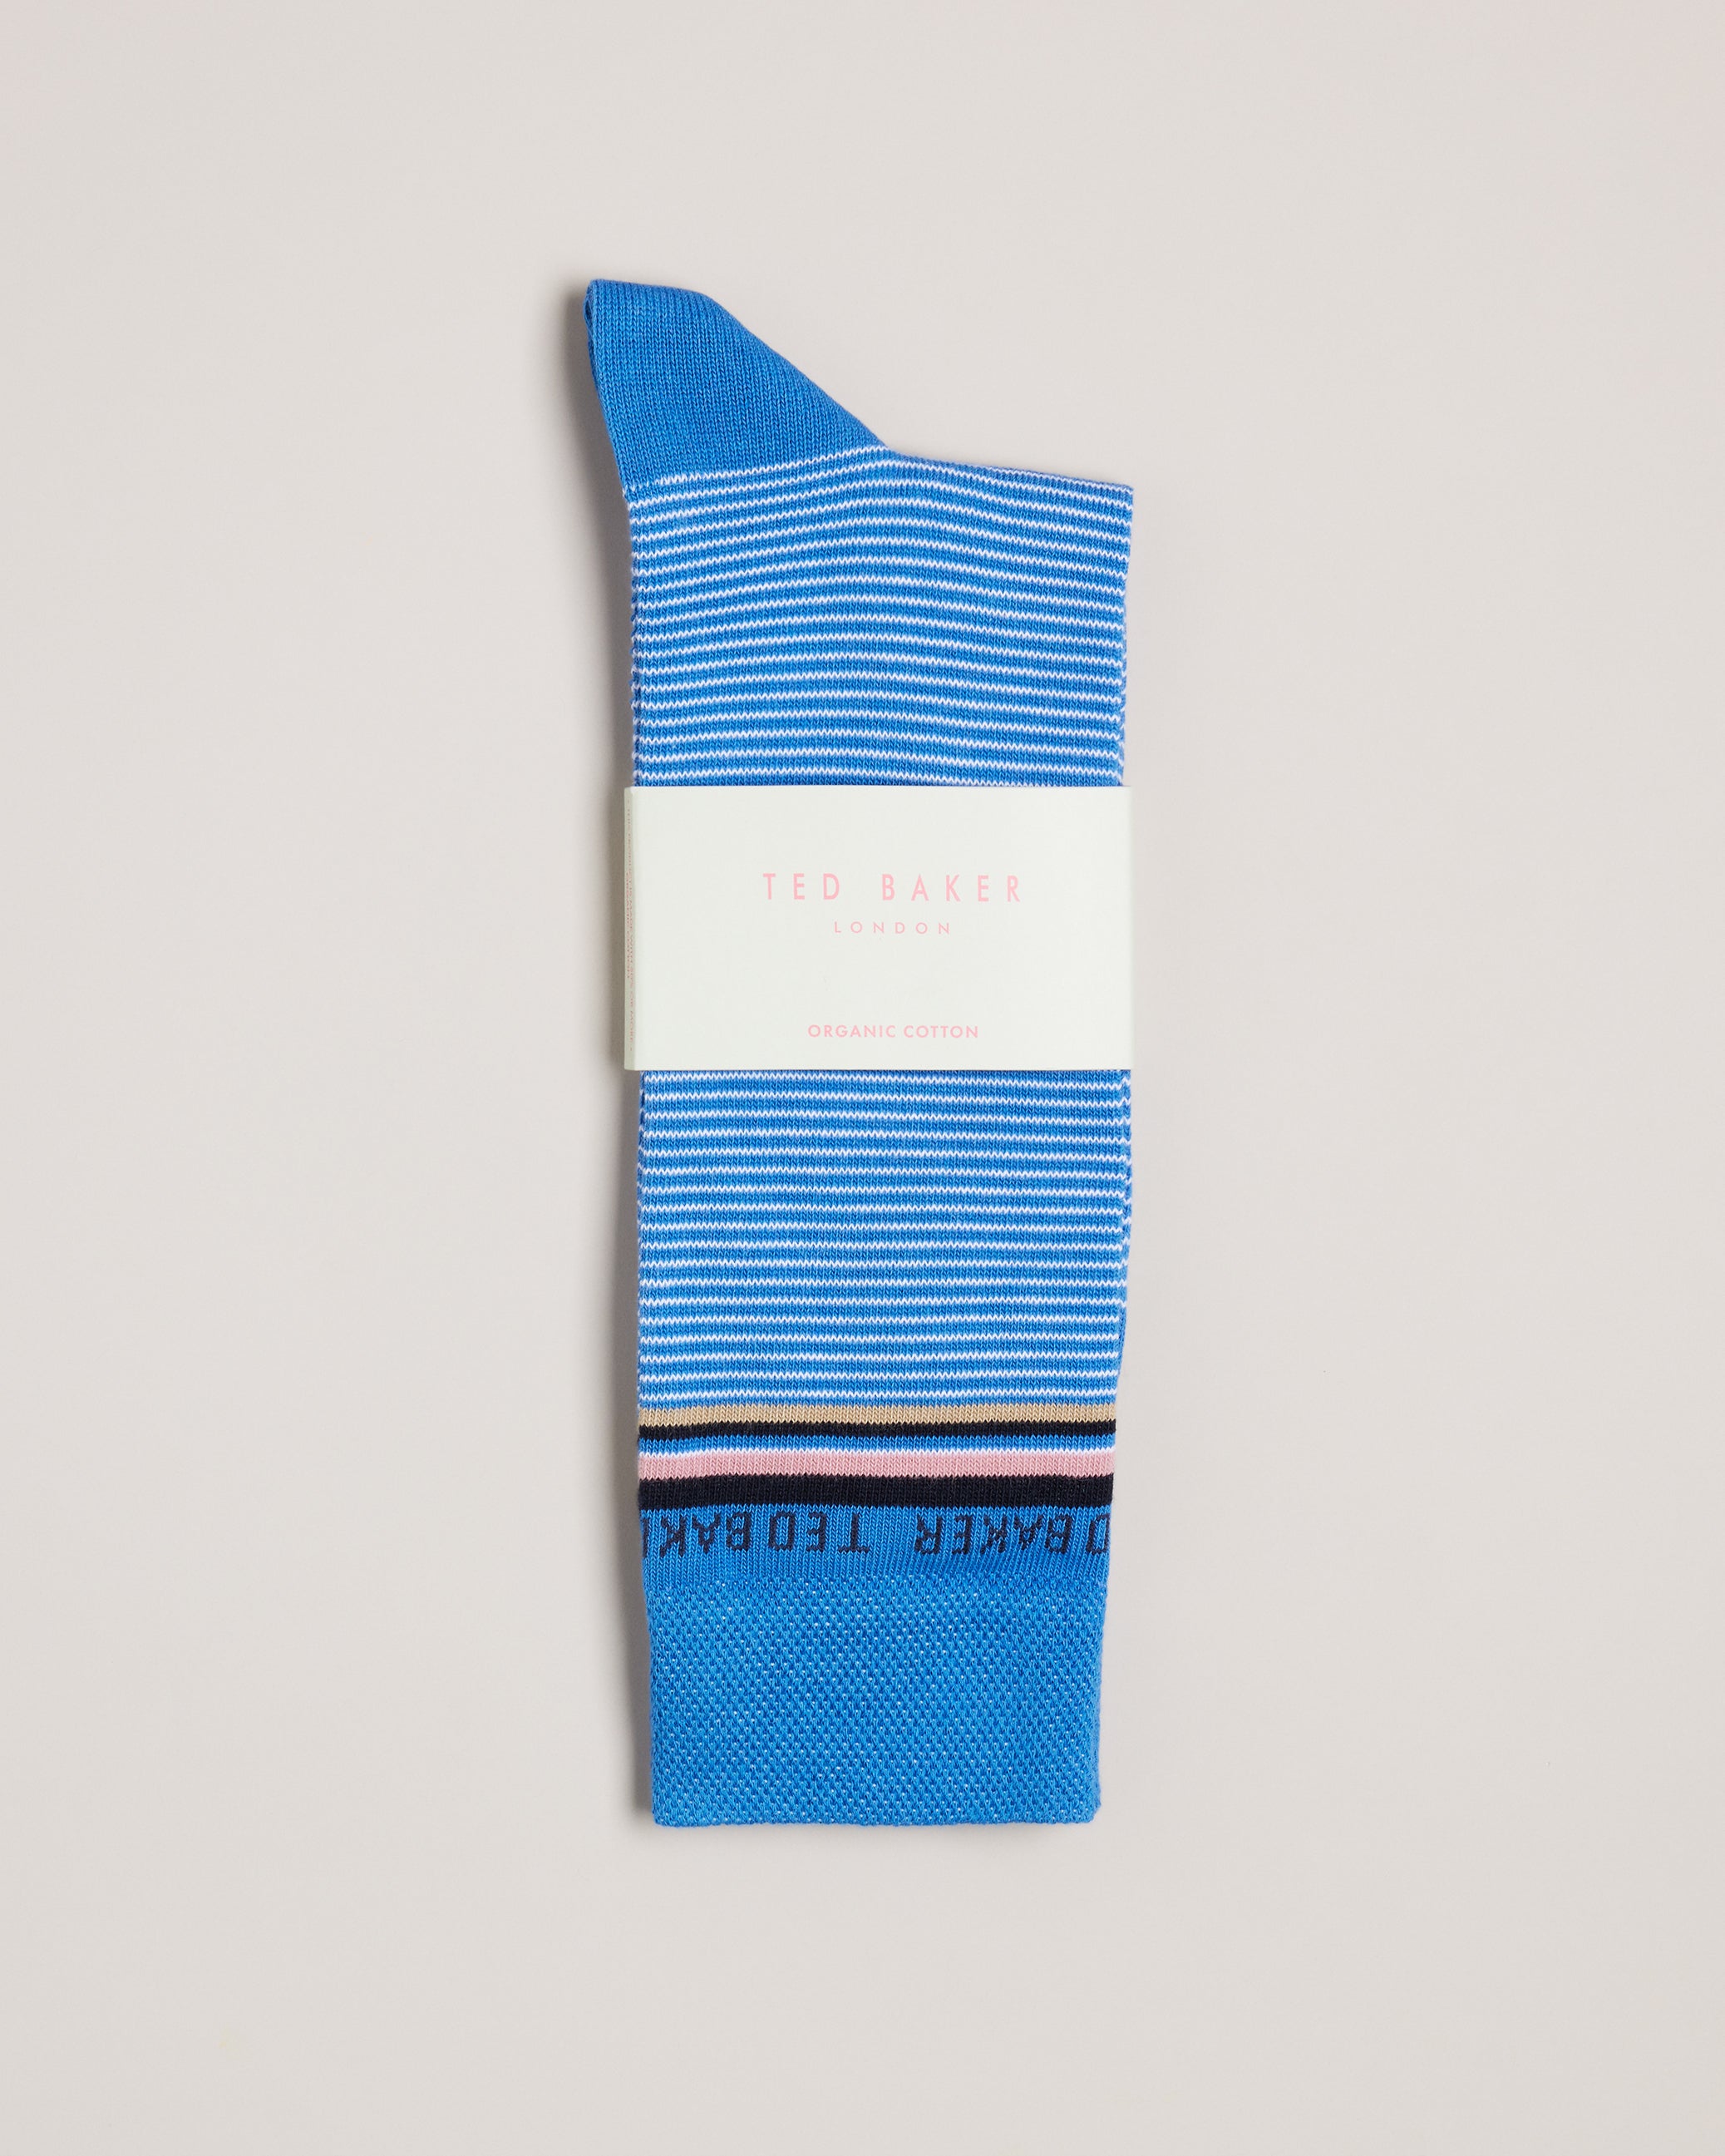 Men's Socks – Ted Baker, United States